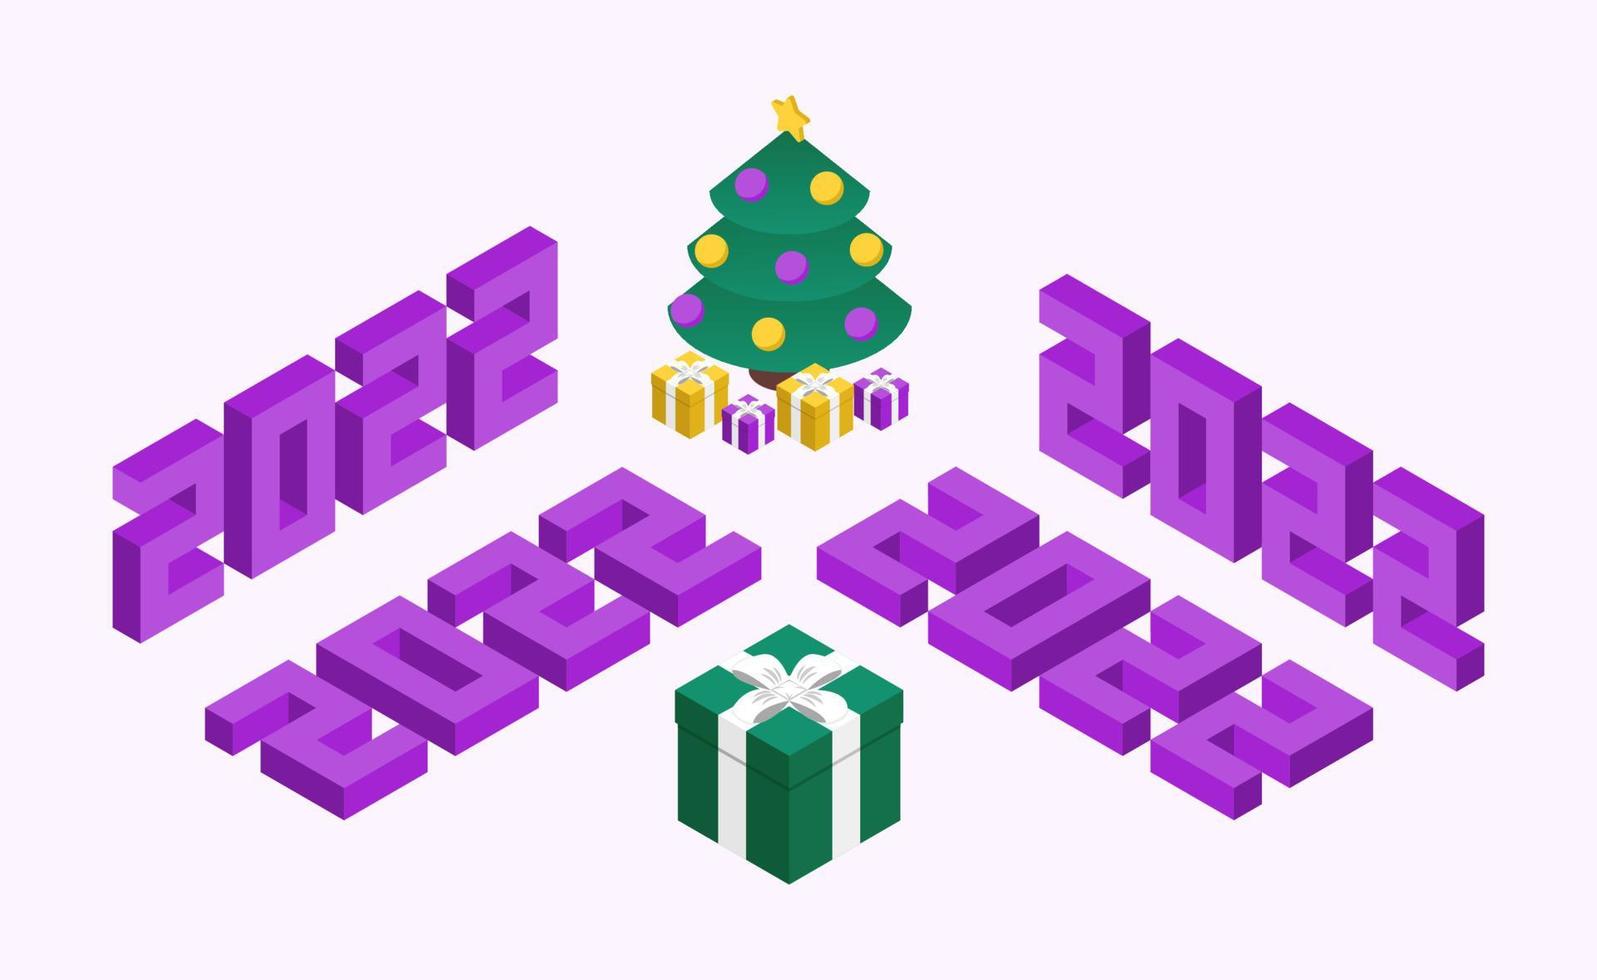 Numéros d'isométrie 2022 avec arbre de Noël et cadeaux. composition du nouvel an dans un style violet et vert. quatre variations de nombres d'isométrie. vecteur